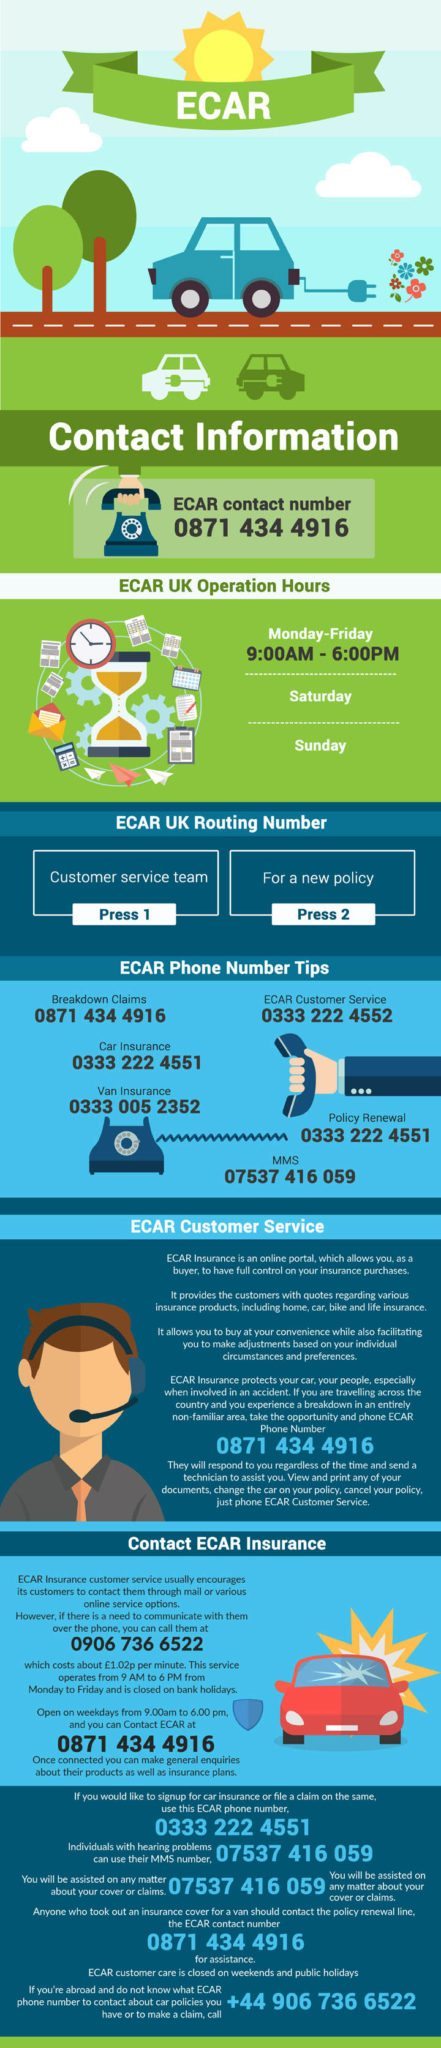 ECAR Customer Service